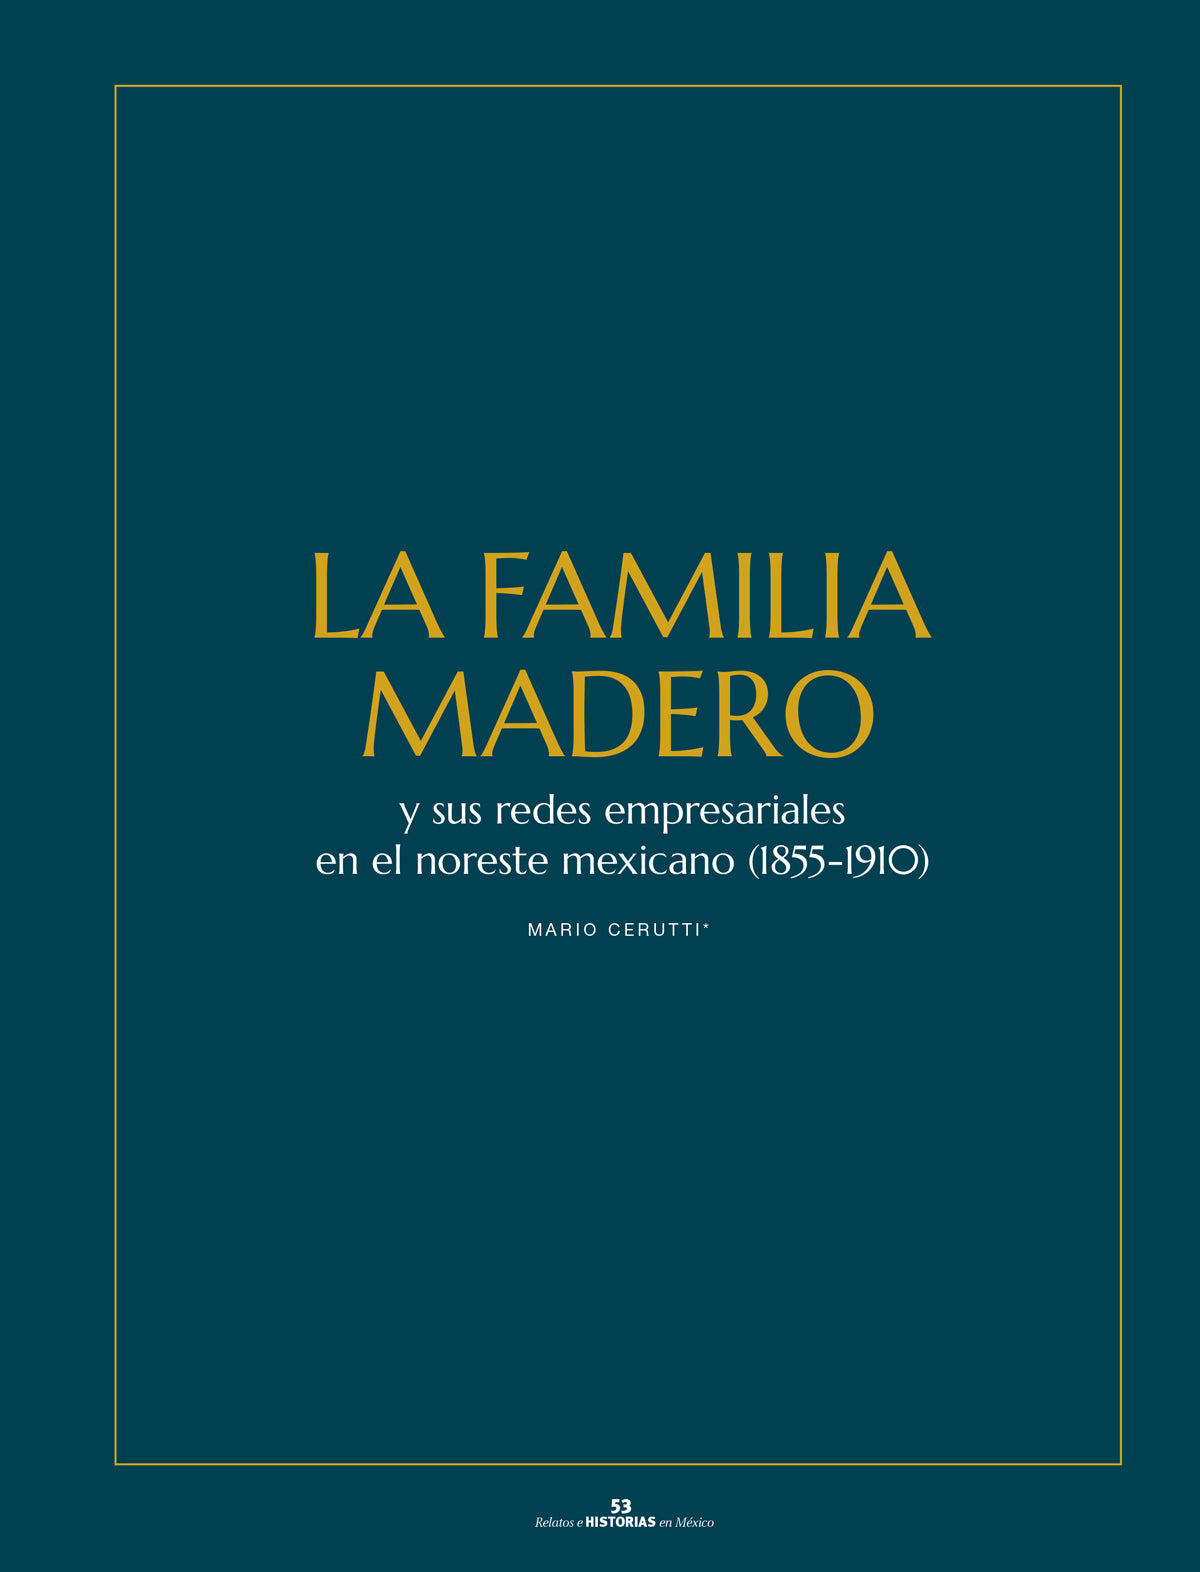 La familia Madero